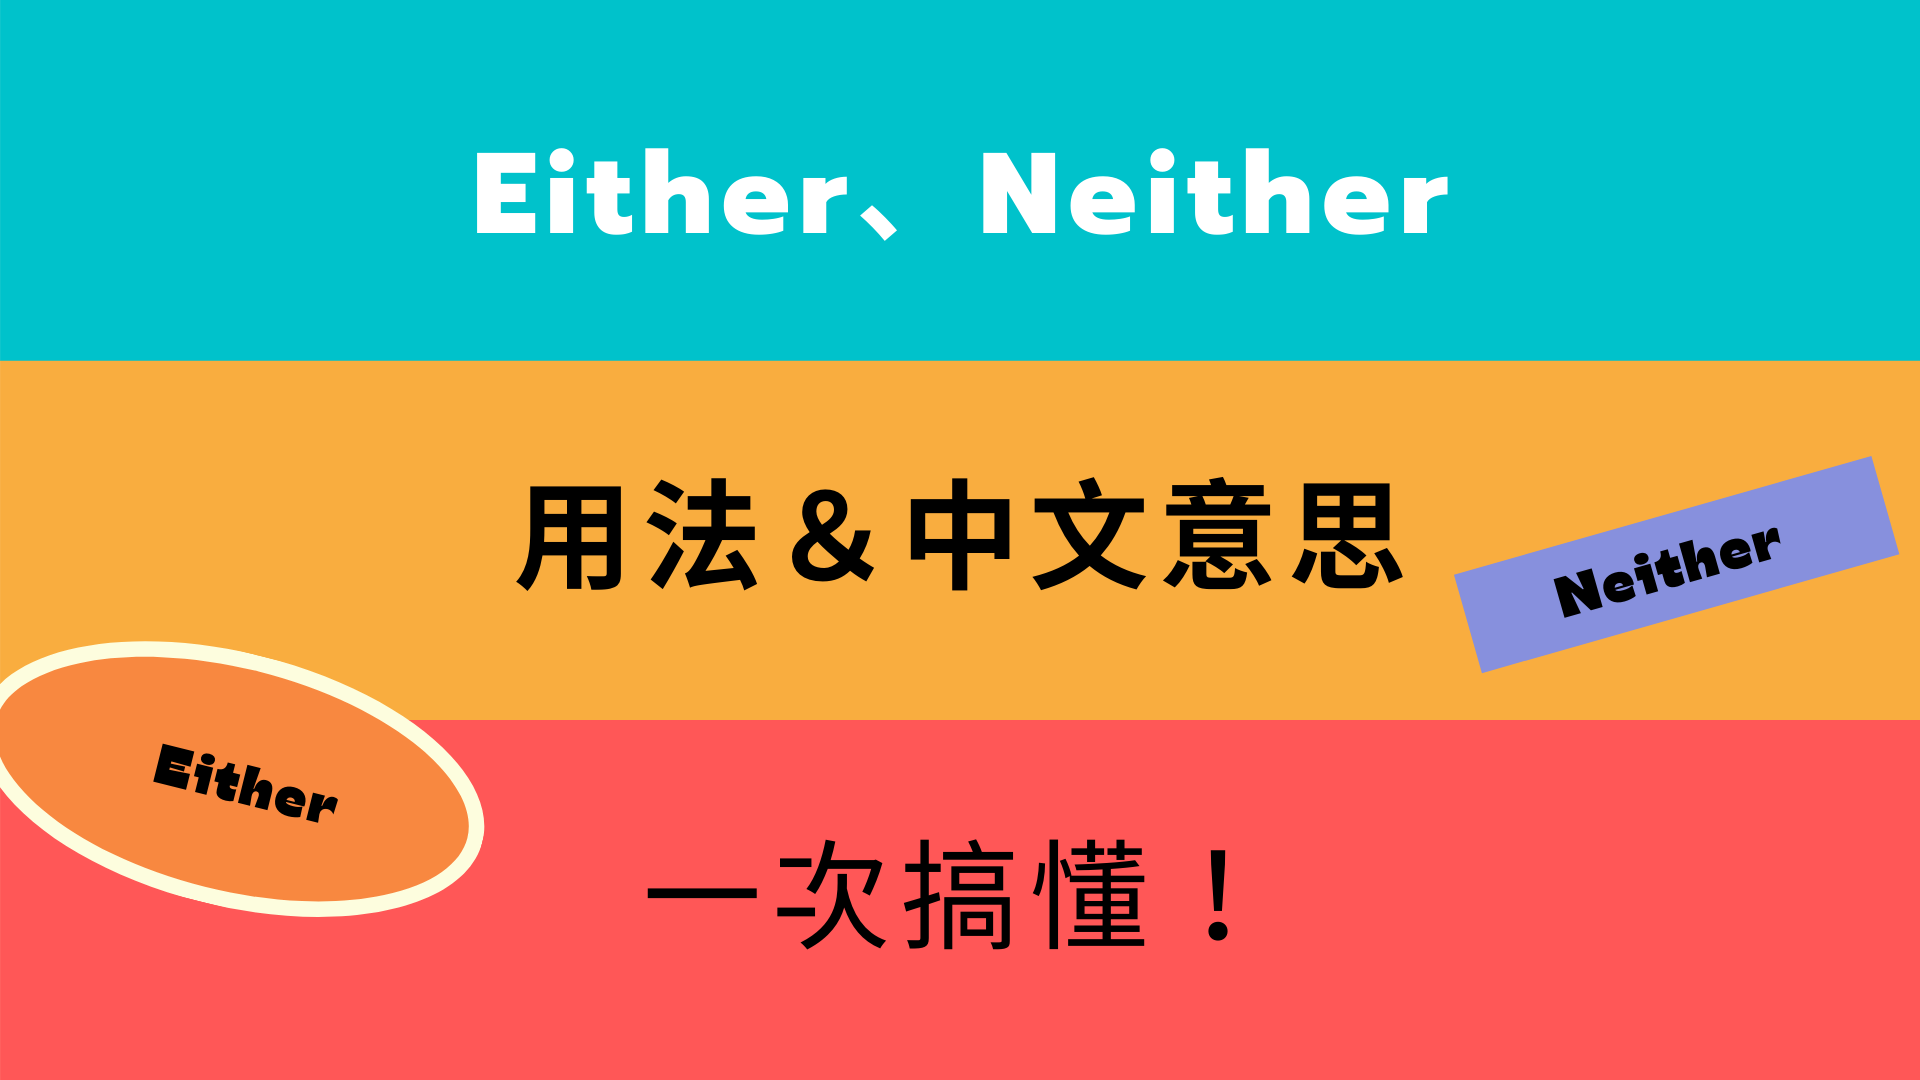 英文 either、neither 所有用法與中文意思！看例句一次搞懂